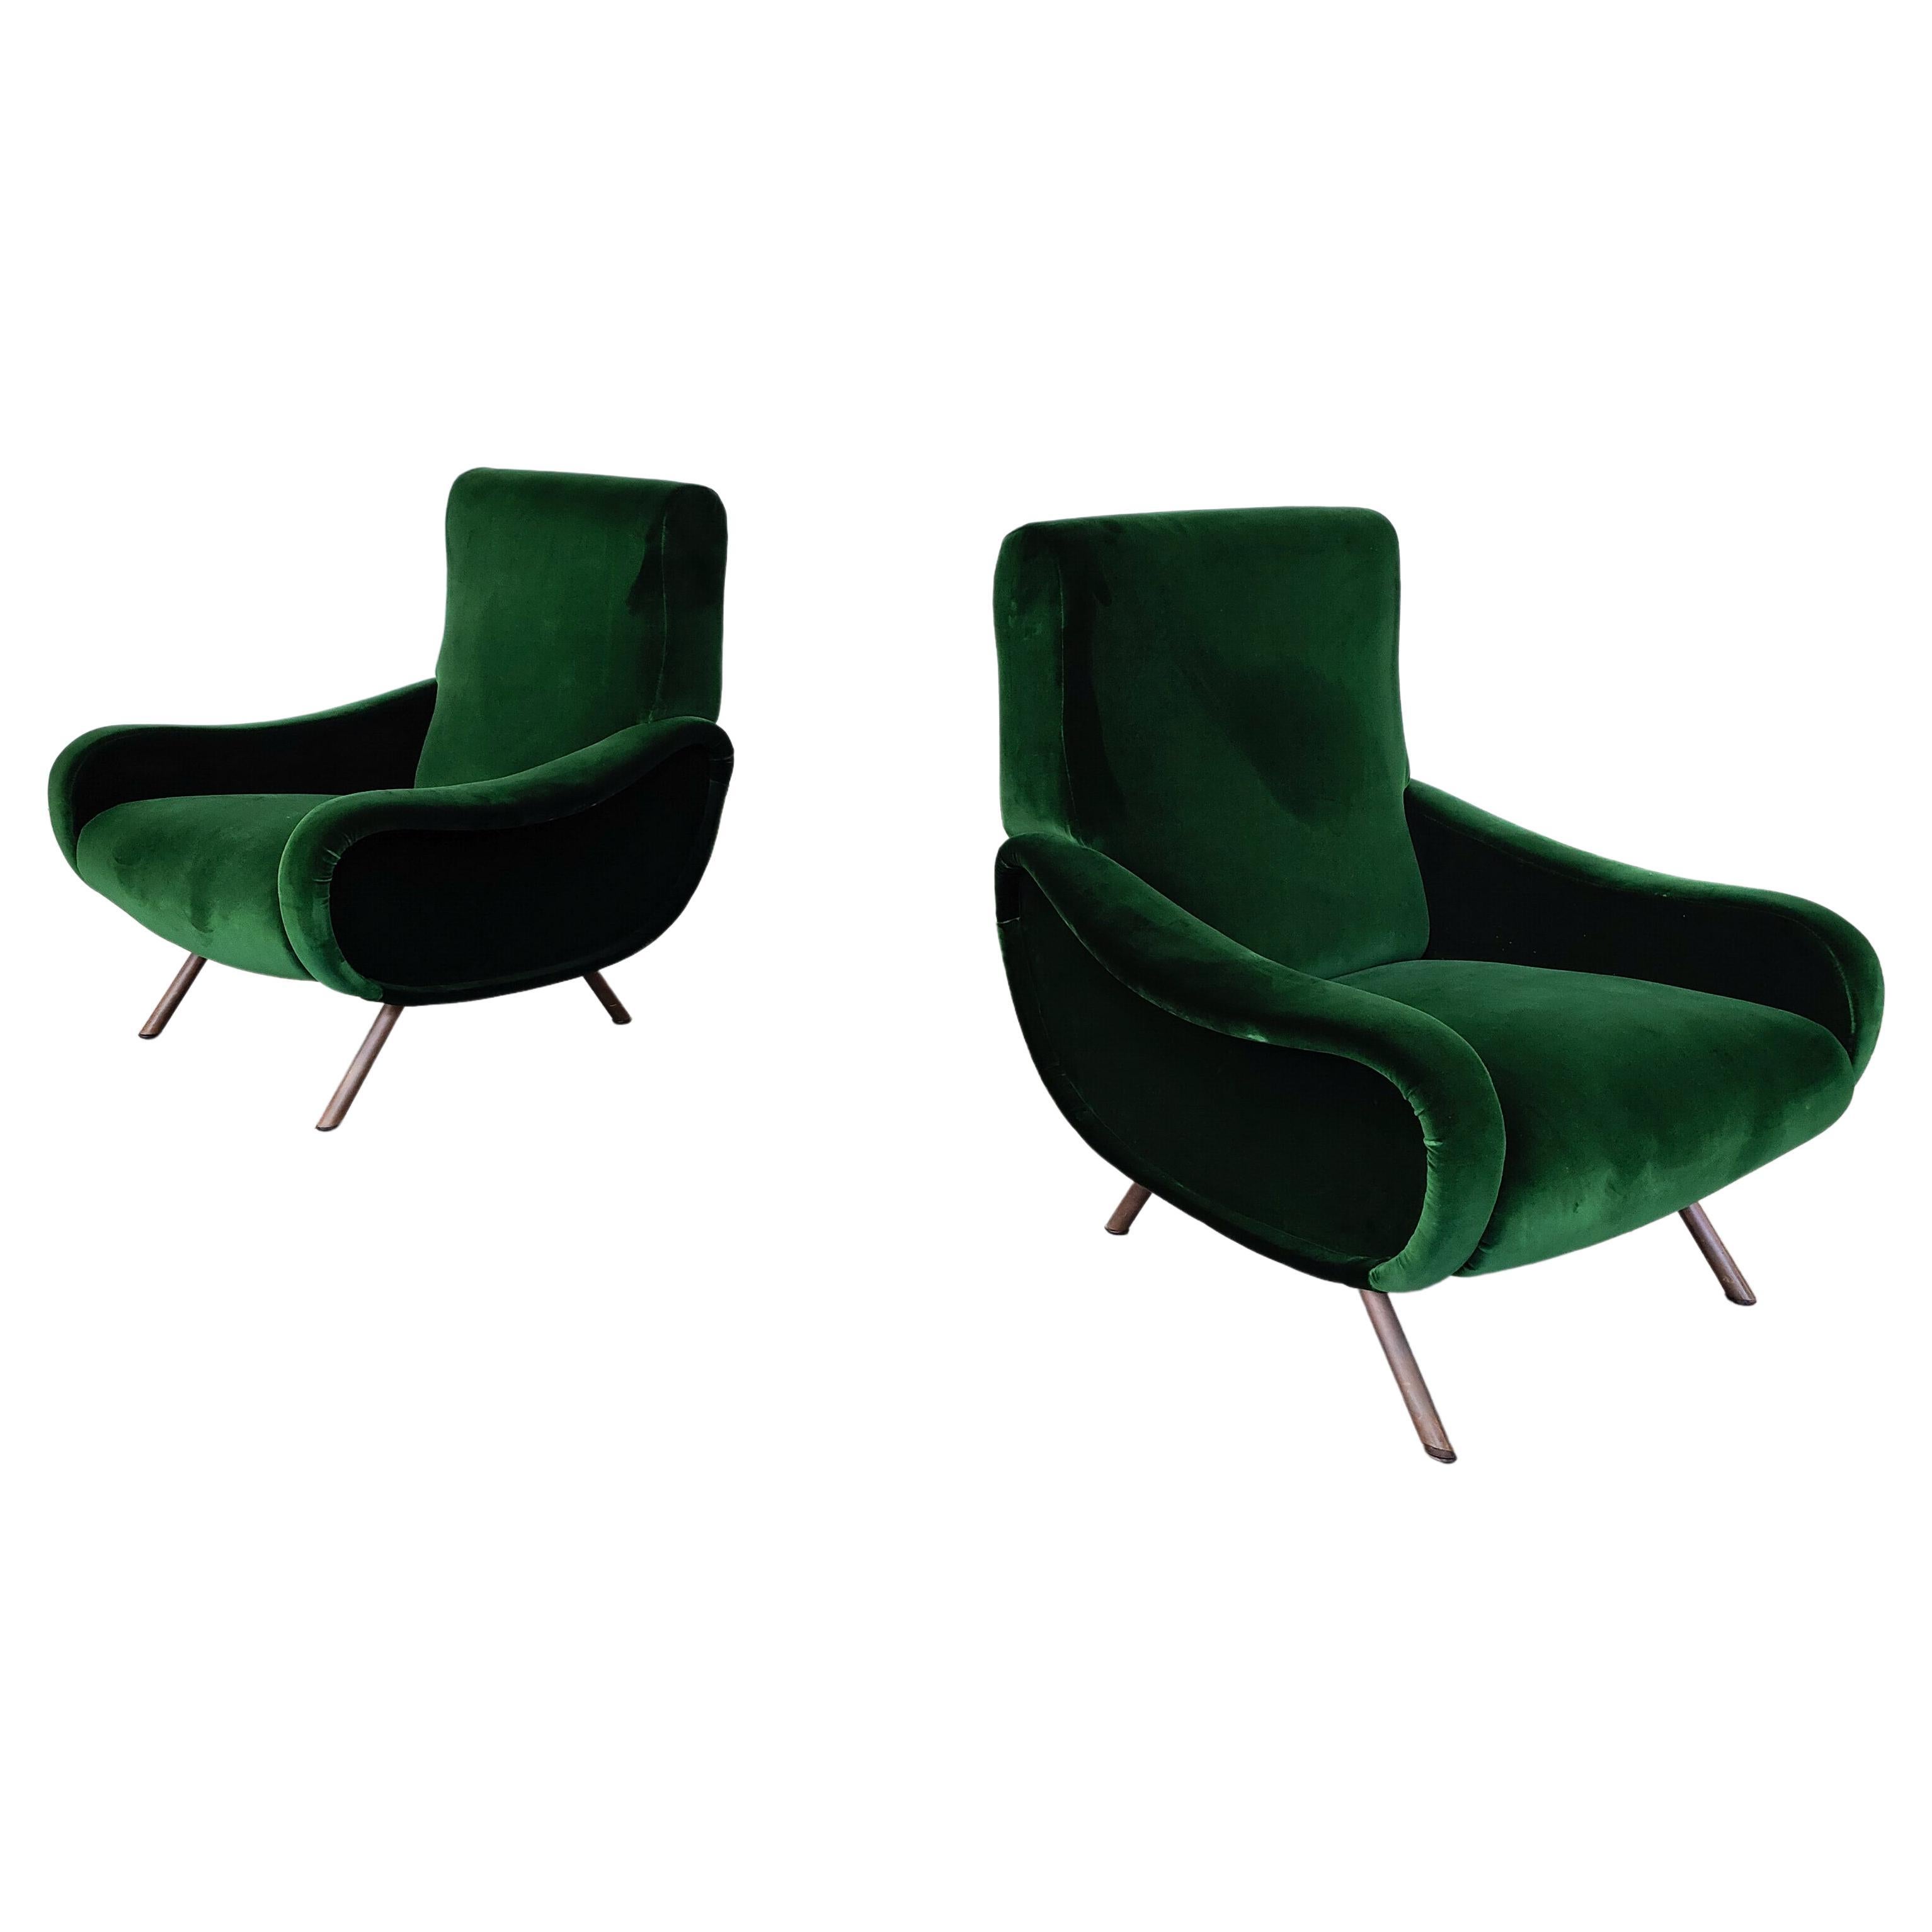 Paire de fauteuils Zanuso de style moderne du milieu du siècle dernier pour Arflex, modèle Lady, années 1950